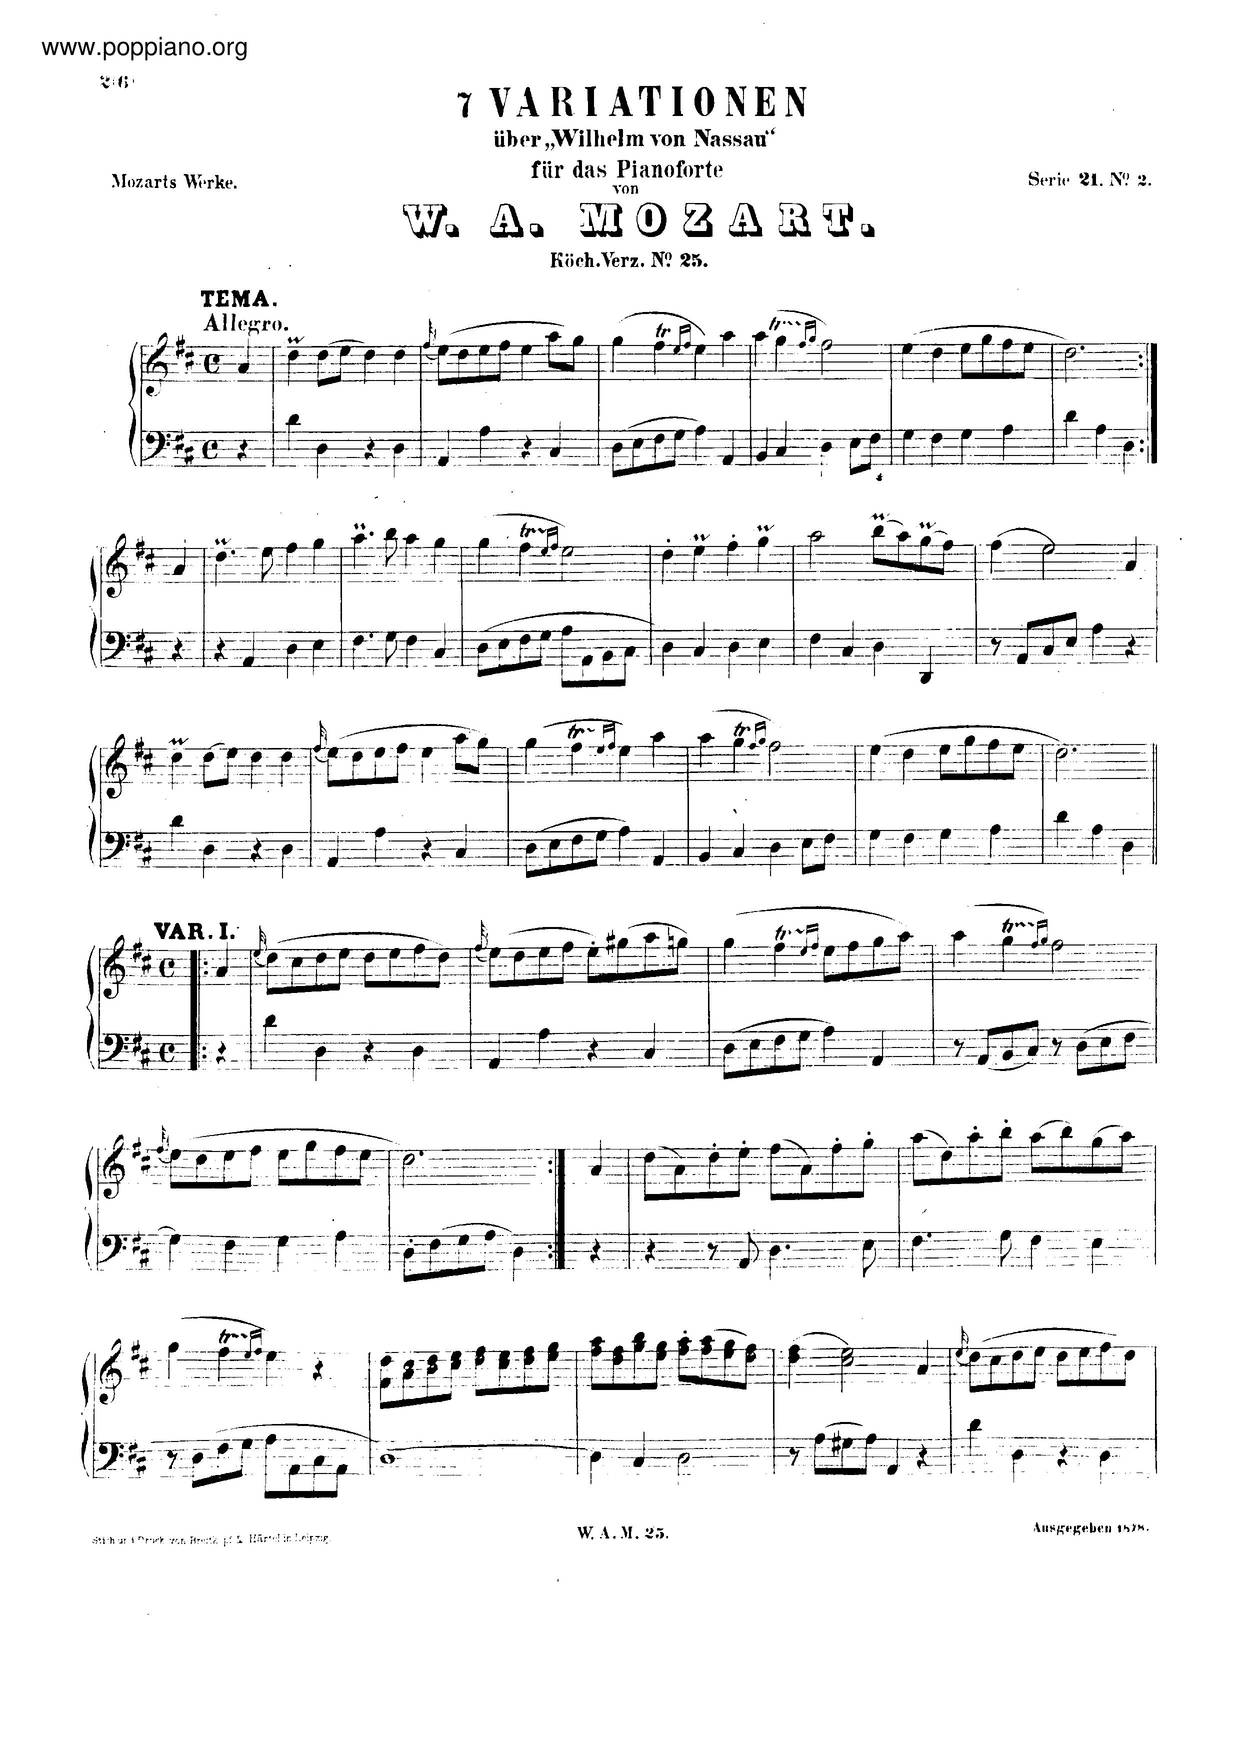 7 Variations On Willem Von Nassau, K. 25琴譜